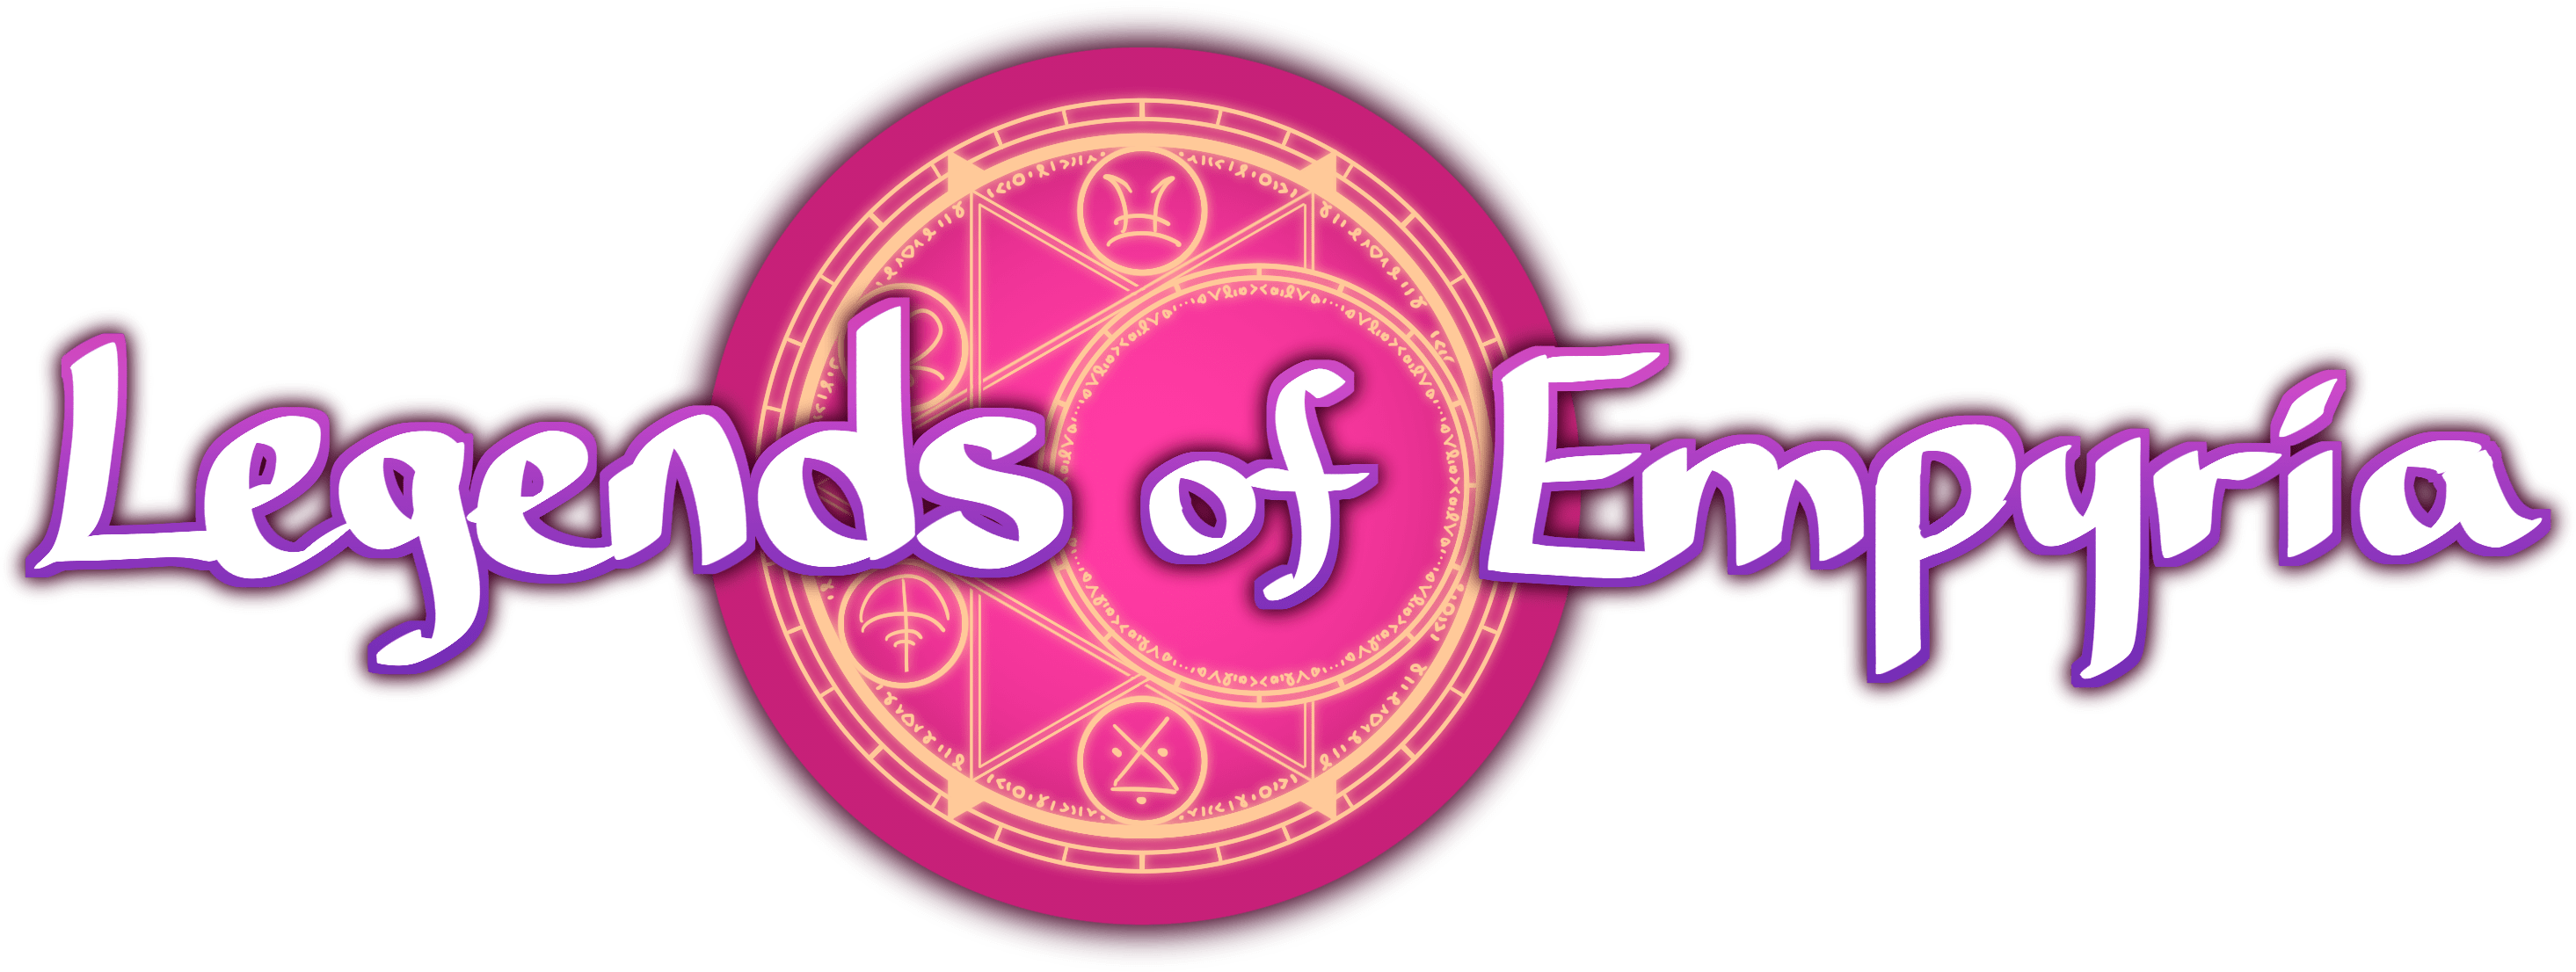 Legends of Empyria; magic circle logo